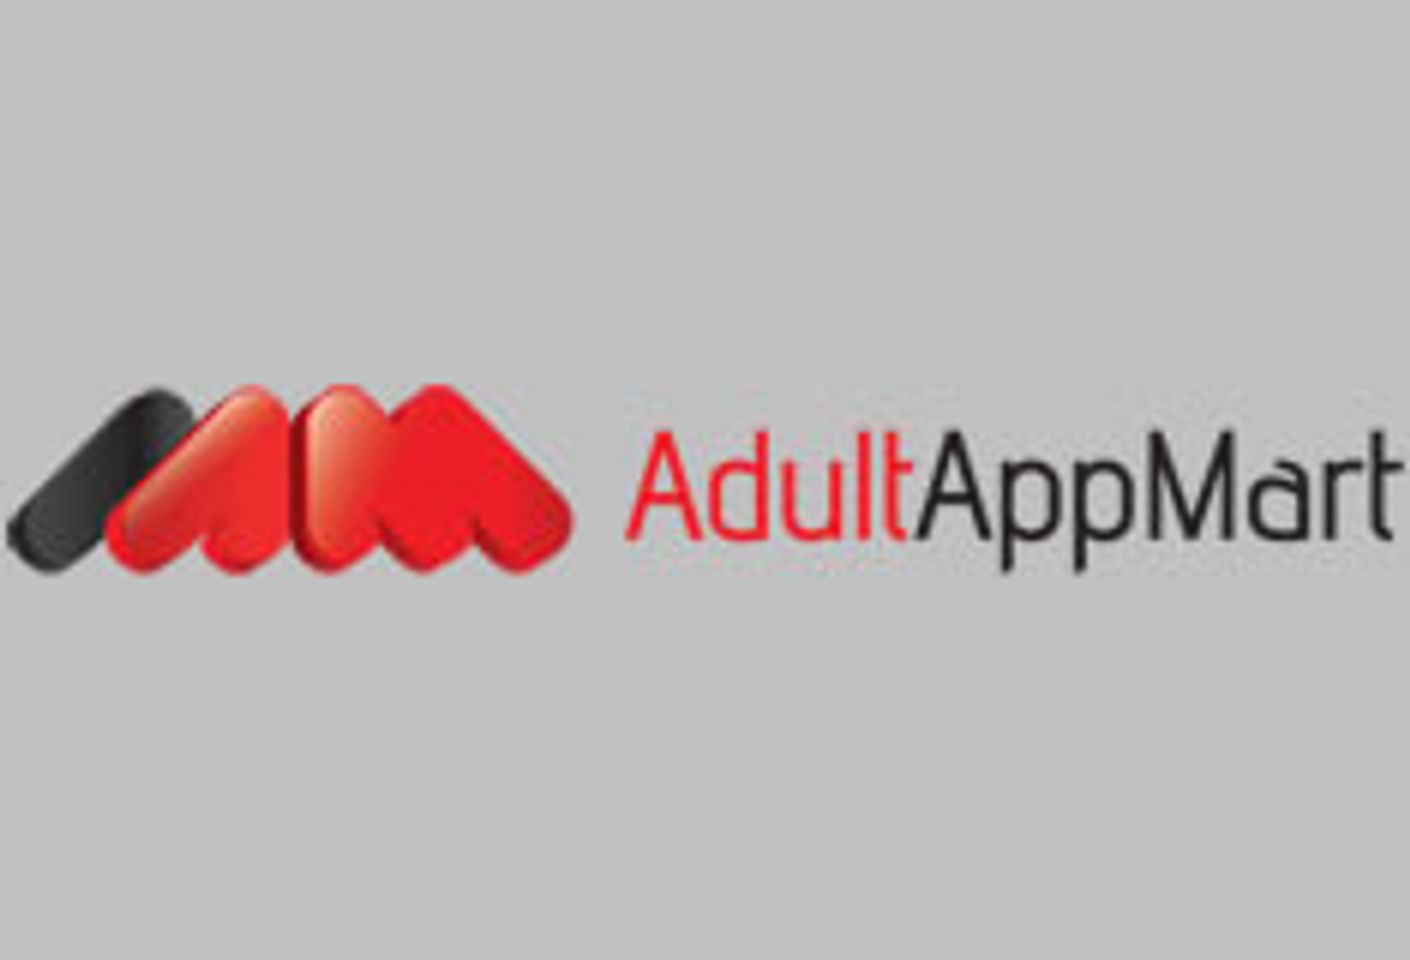 AdultAppMart Incorporates Quick Response Codes (QR Codes)